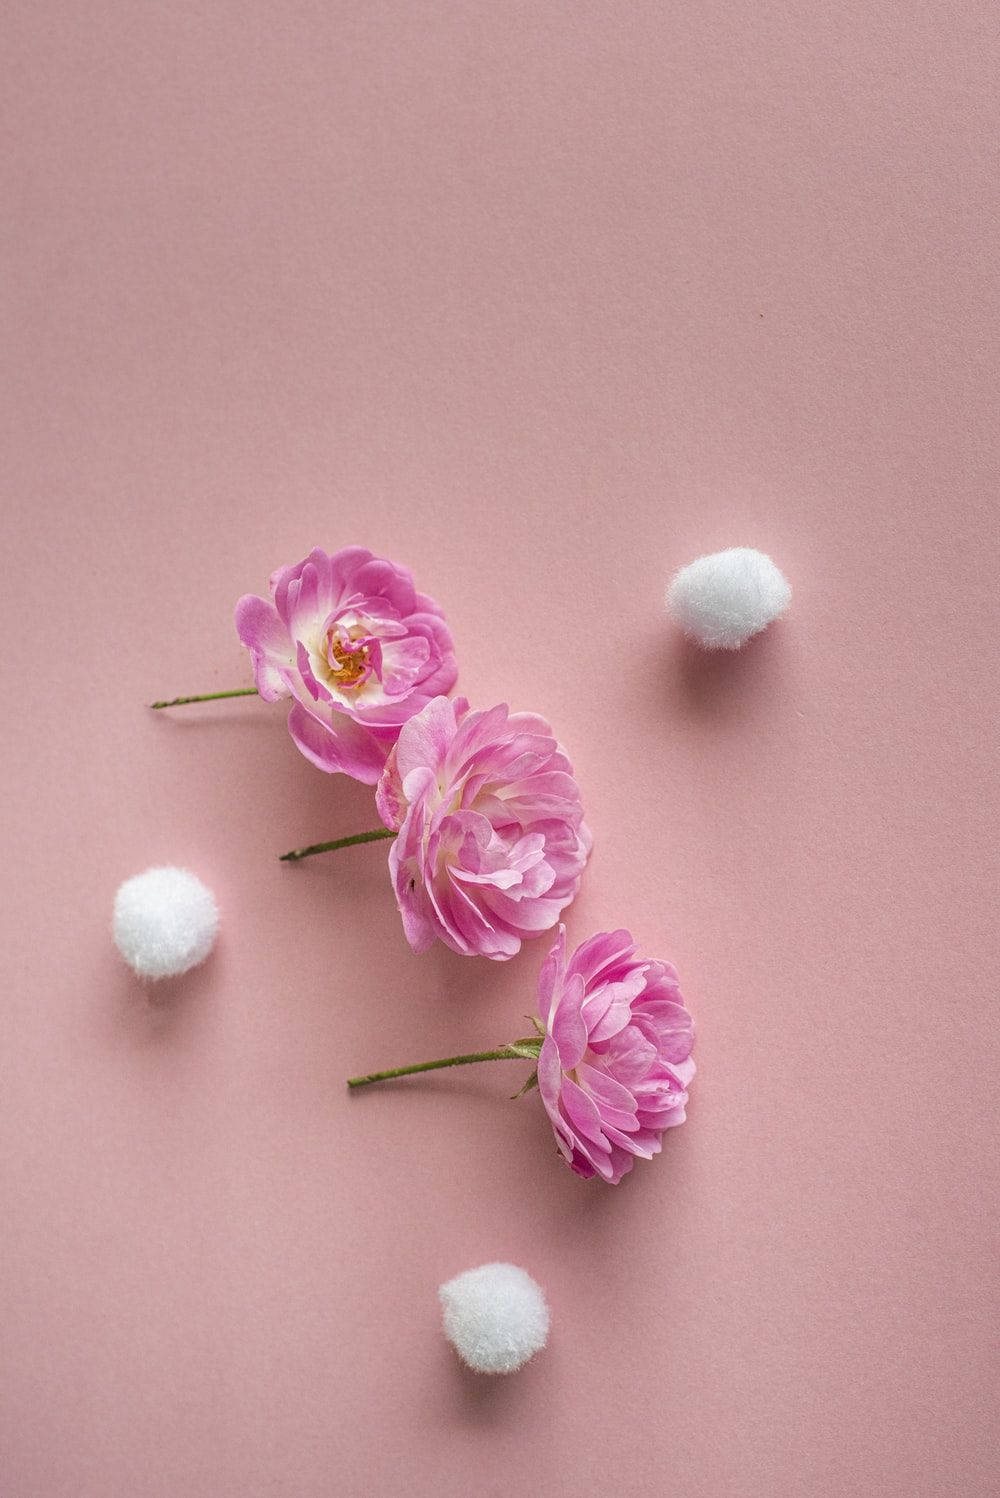 Nydden Smukke Rosa Vintage Æstetik I Denne Fantastiske Baggrundsbillede. Wallpaper